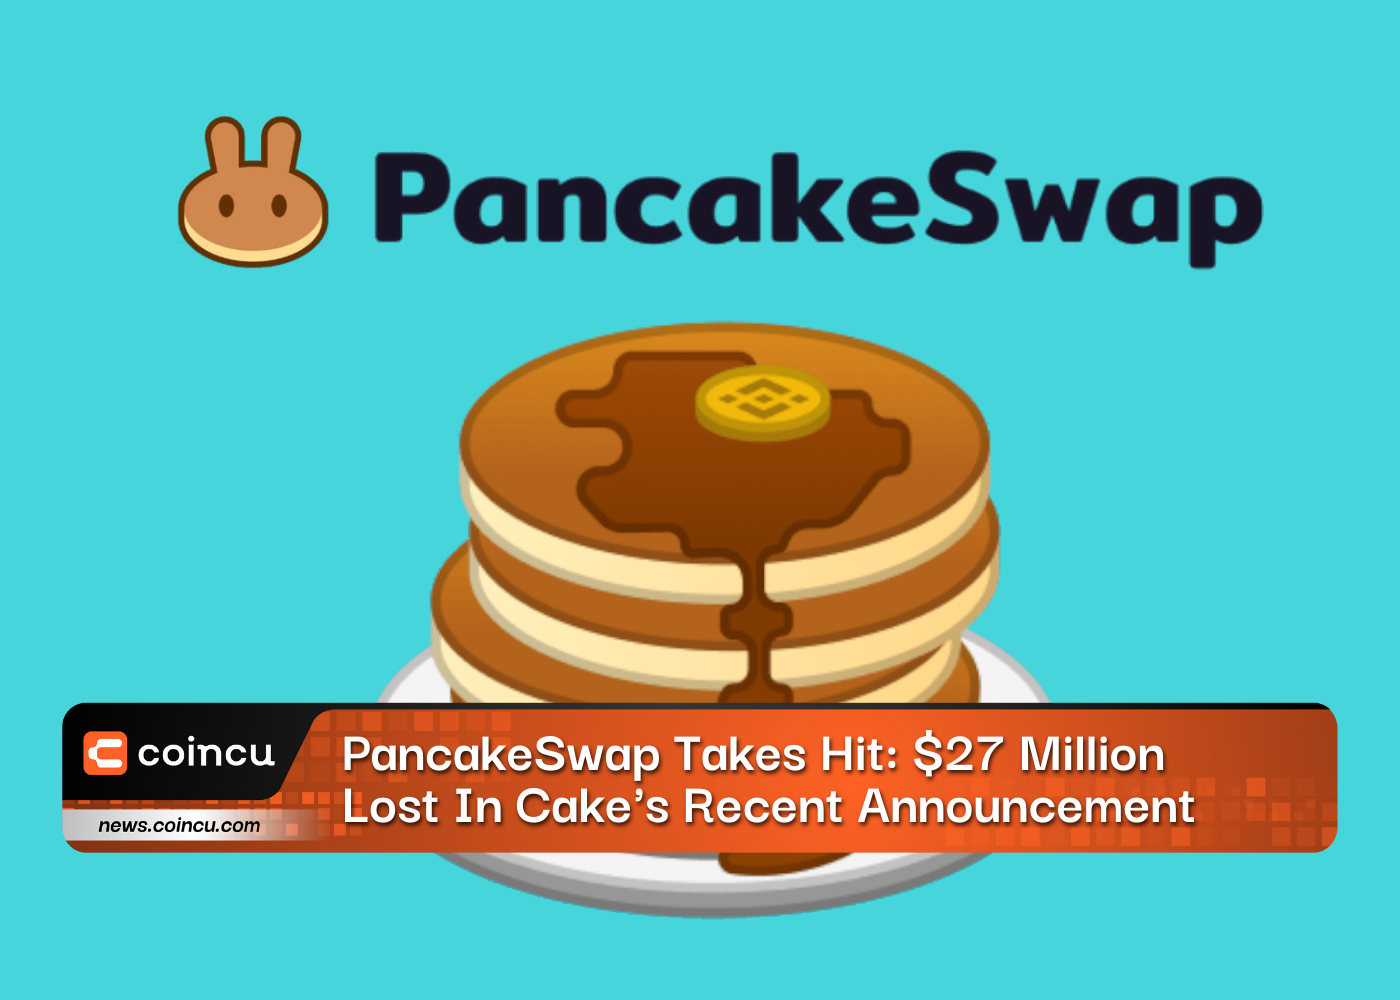 PancakeSwap Takes Hit 27 Million